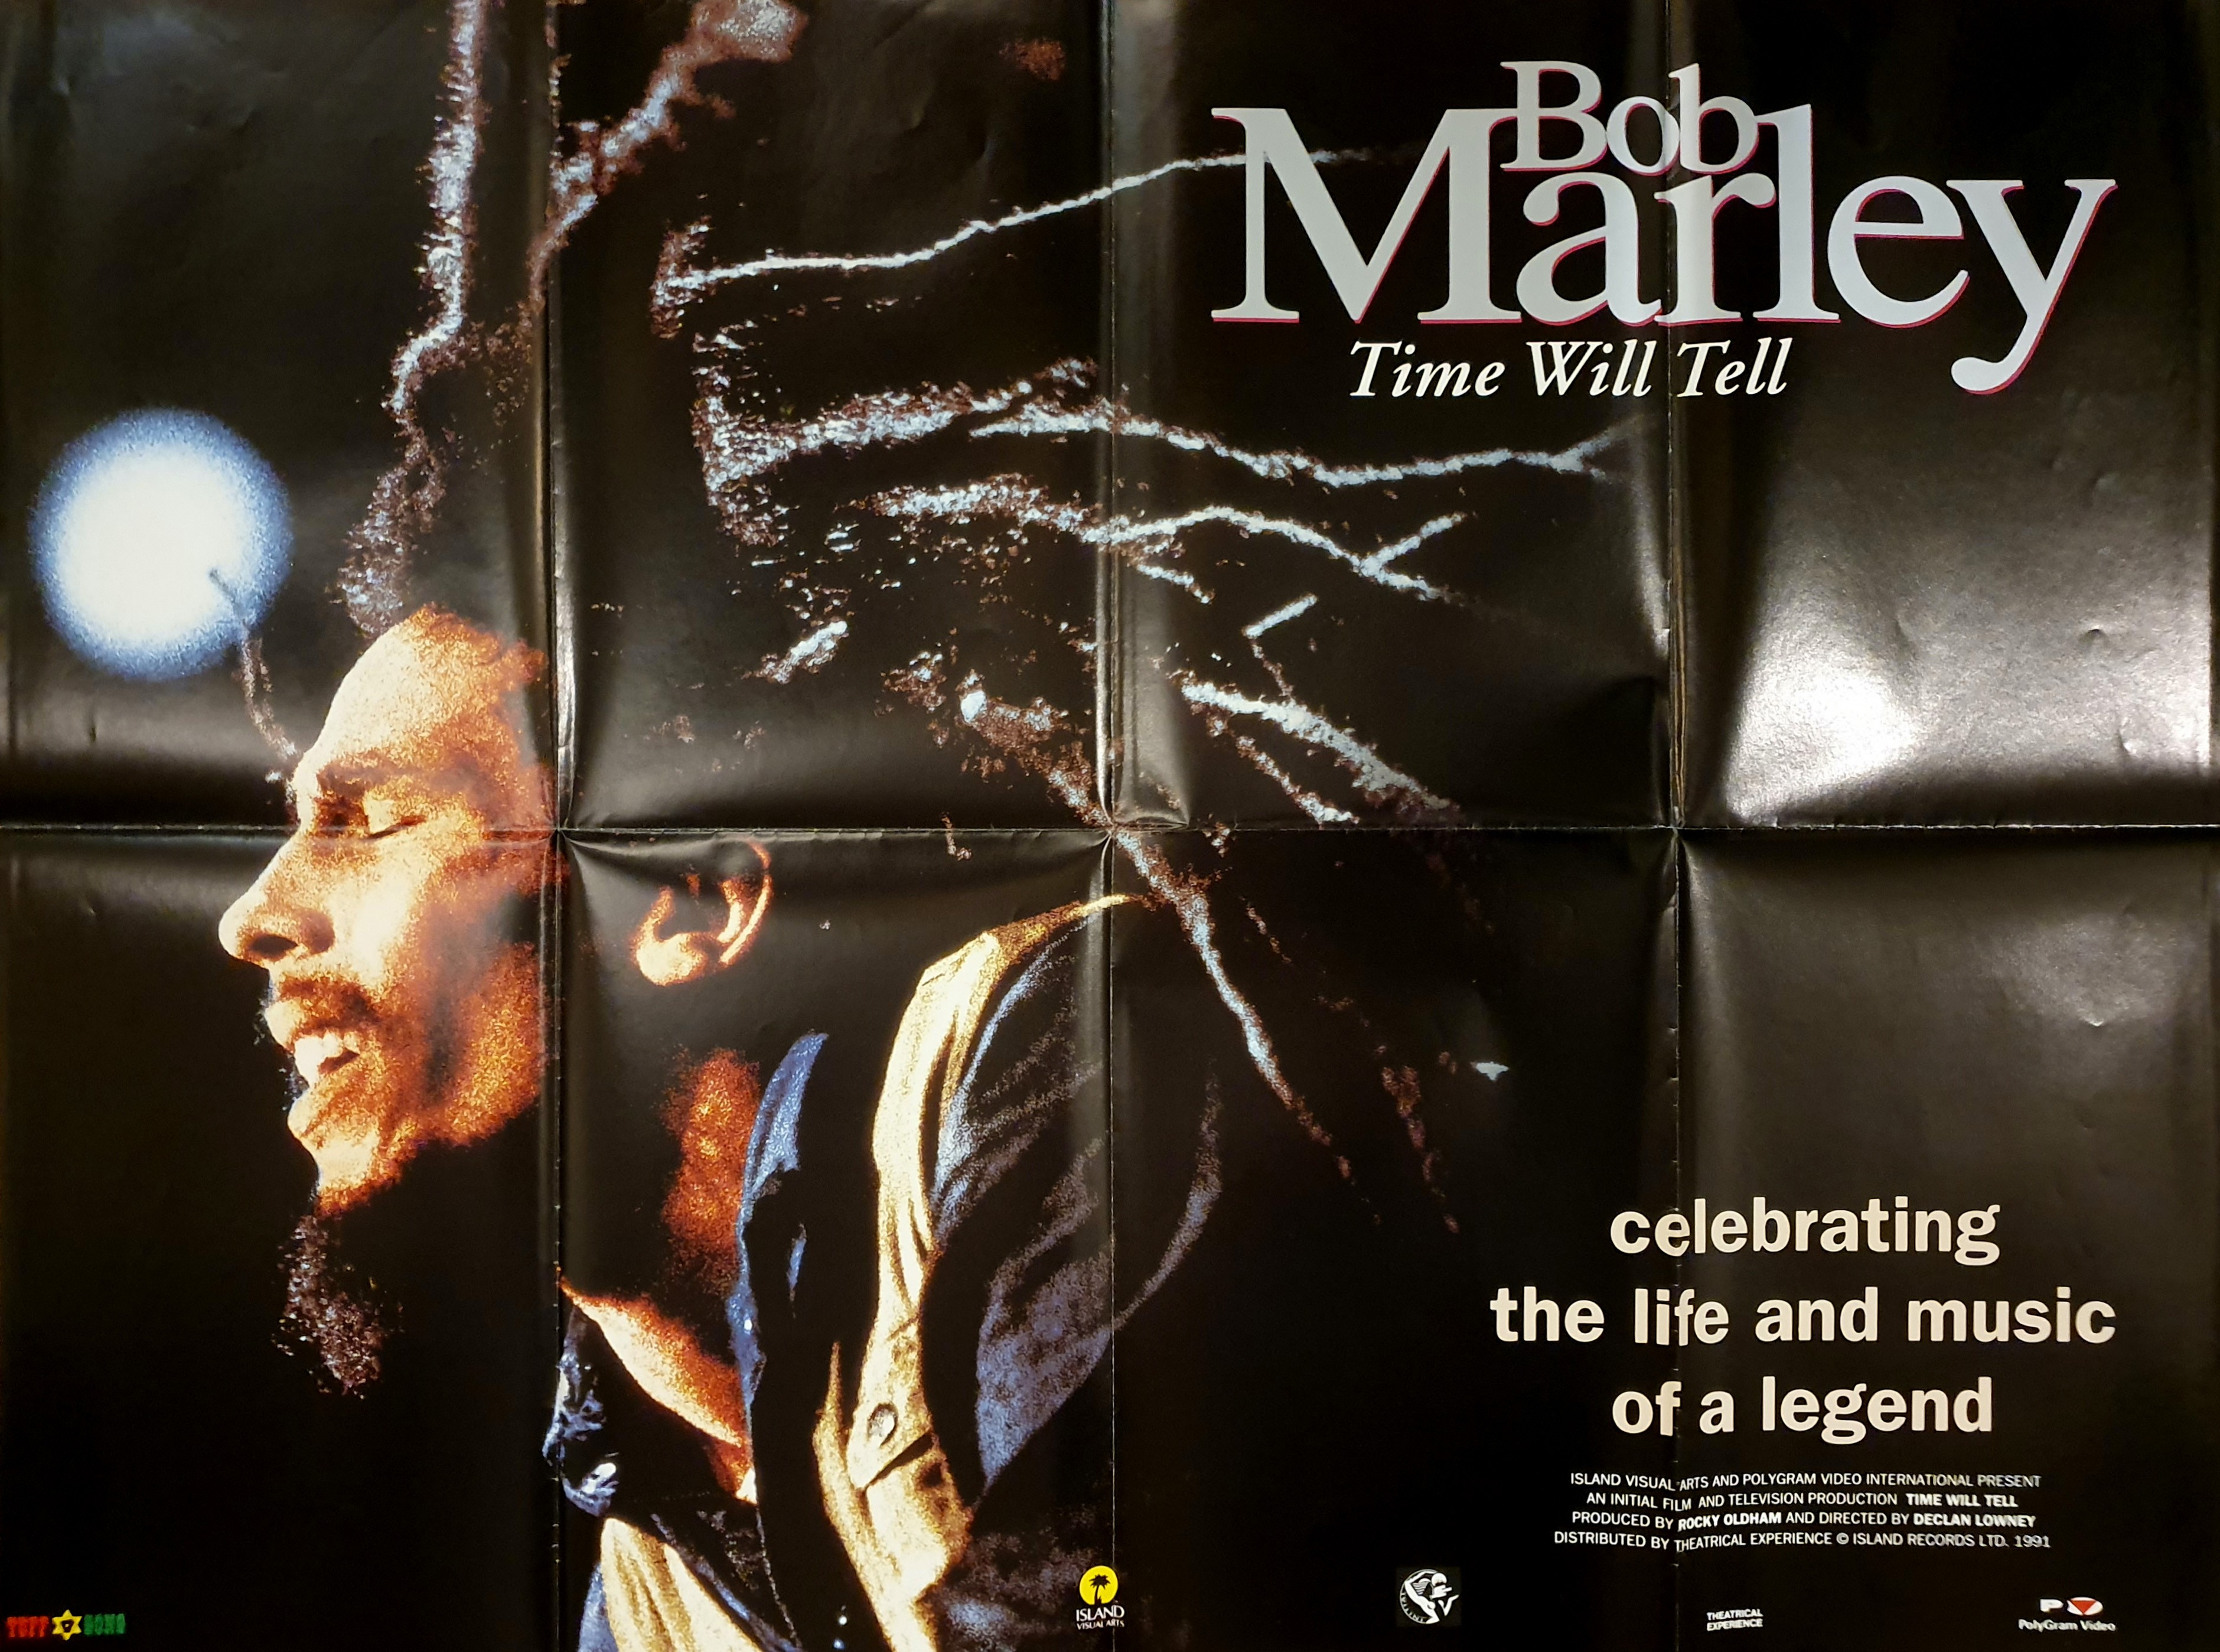 Bob Marley : Time will tell - www.posterissim.com